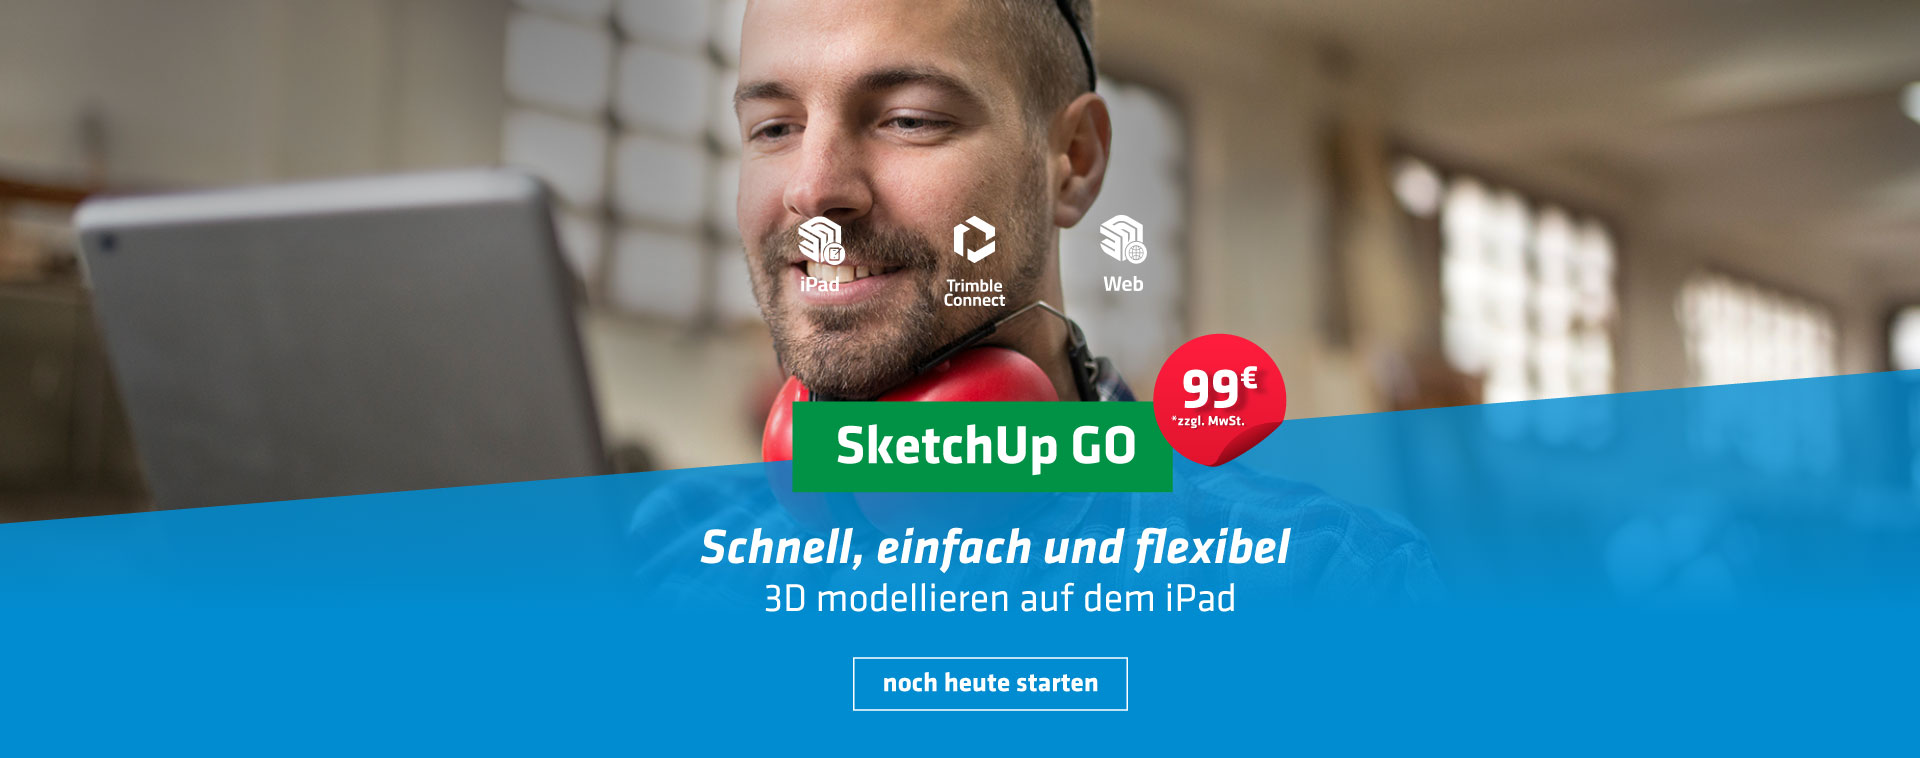 SketchUp Go - 99 Euro